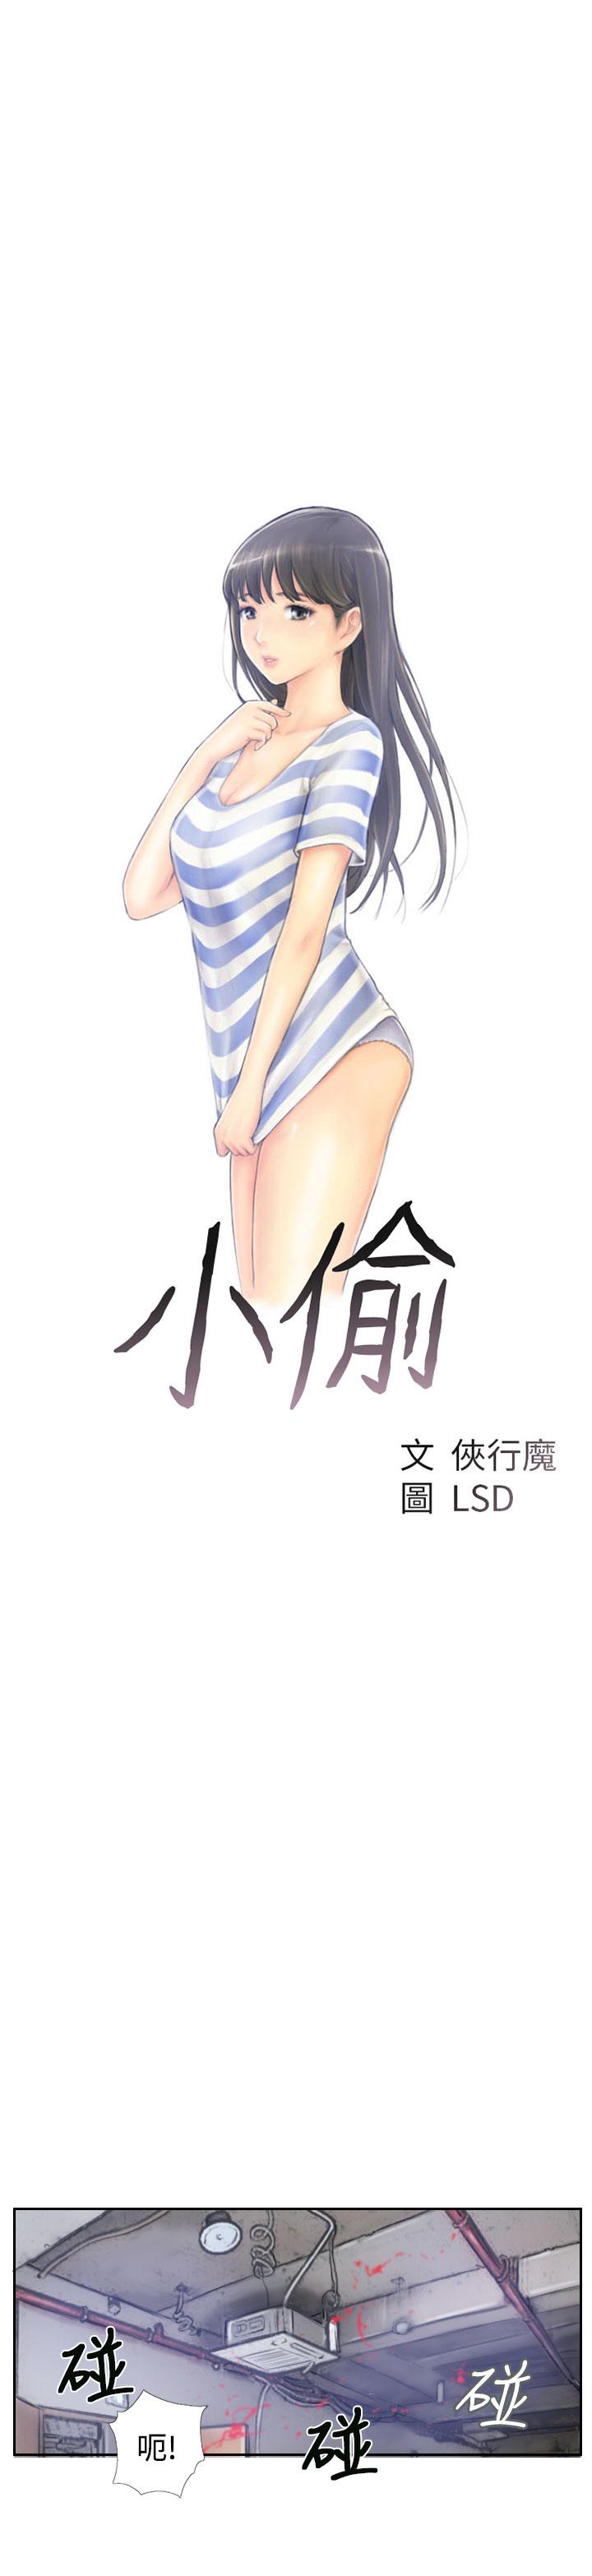 Jav [LSD&俠行魔]Thief 小偷 Ch.1~5 [Chinese]中文 Bdsm - Page 2